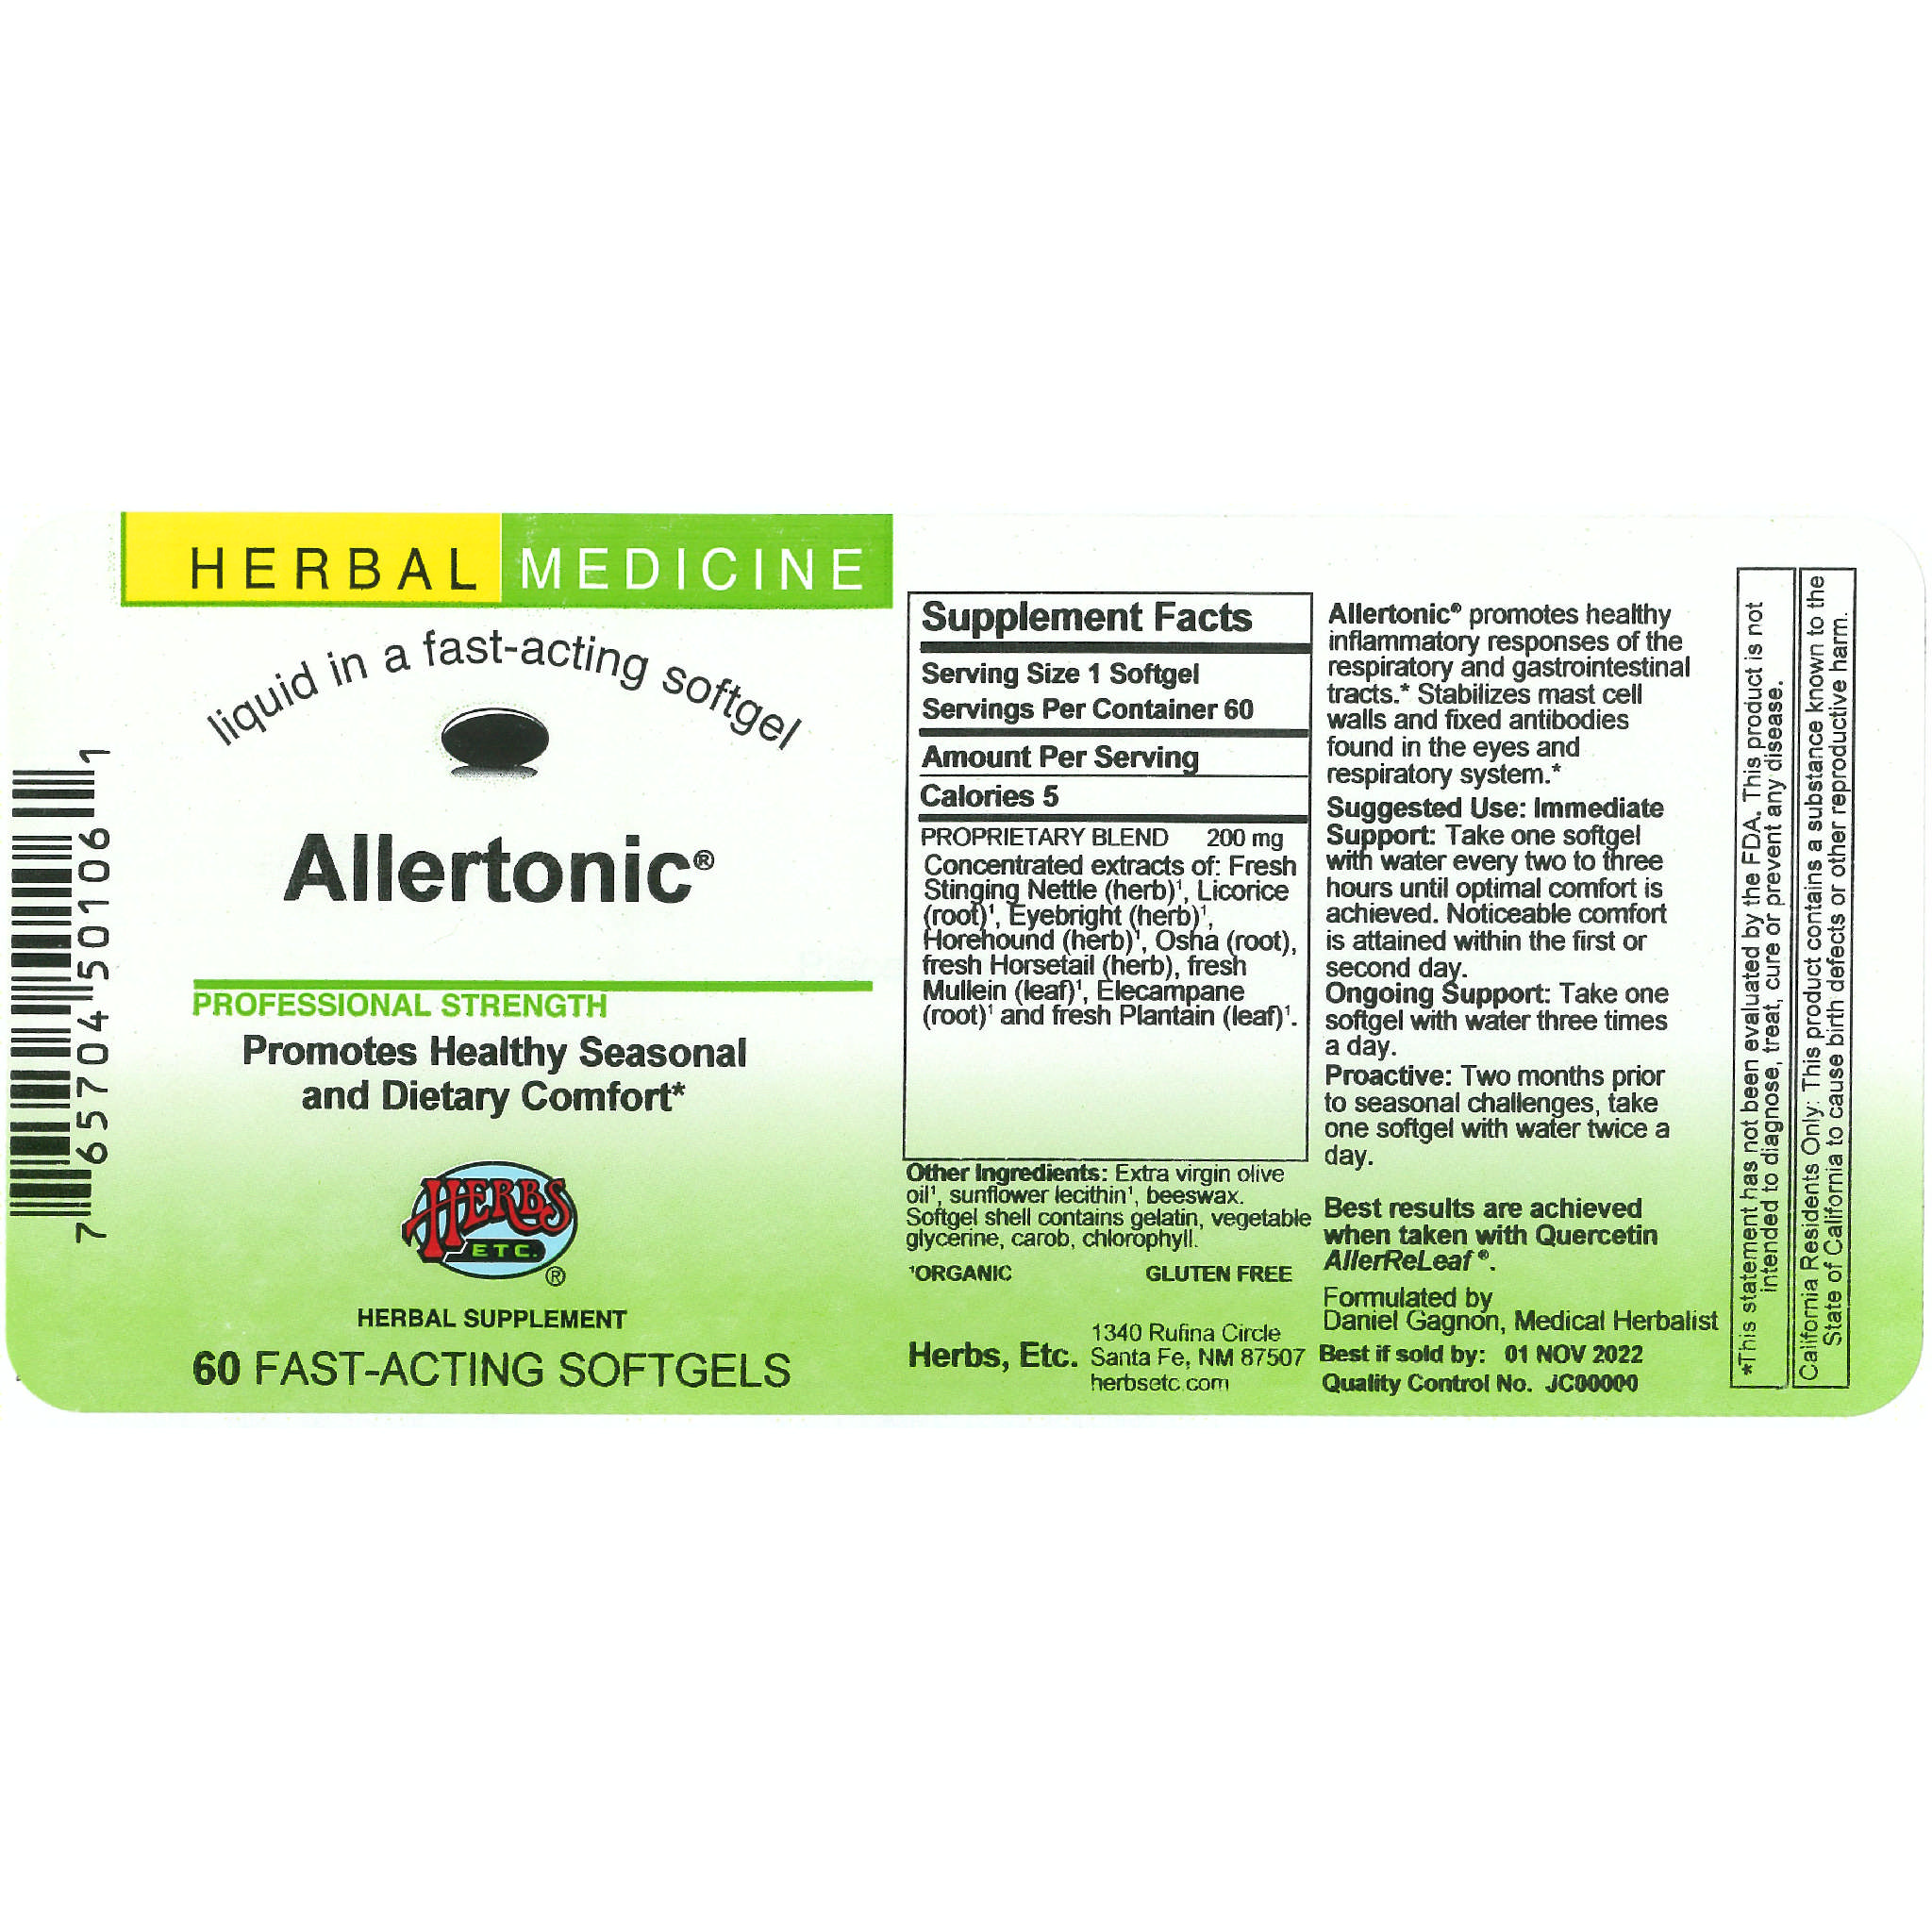 Herbs Etc - Allertonic